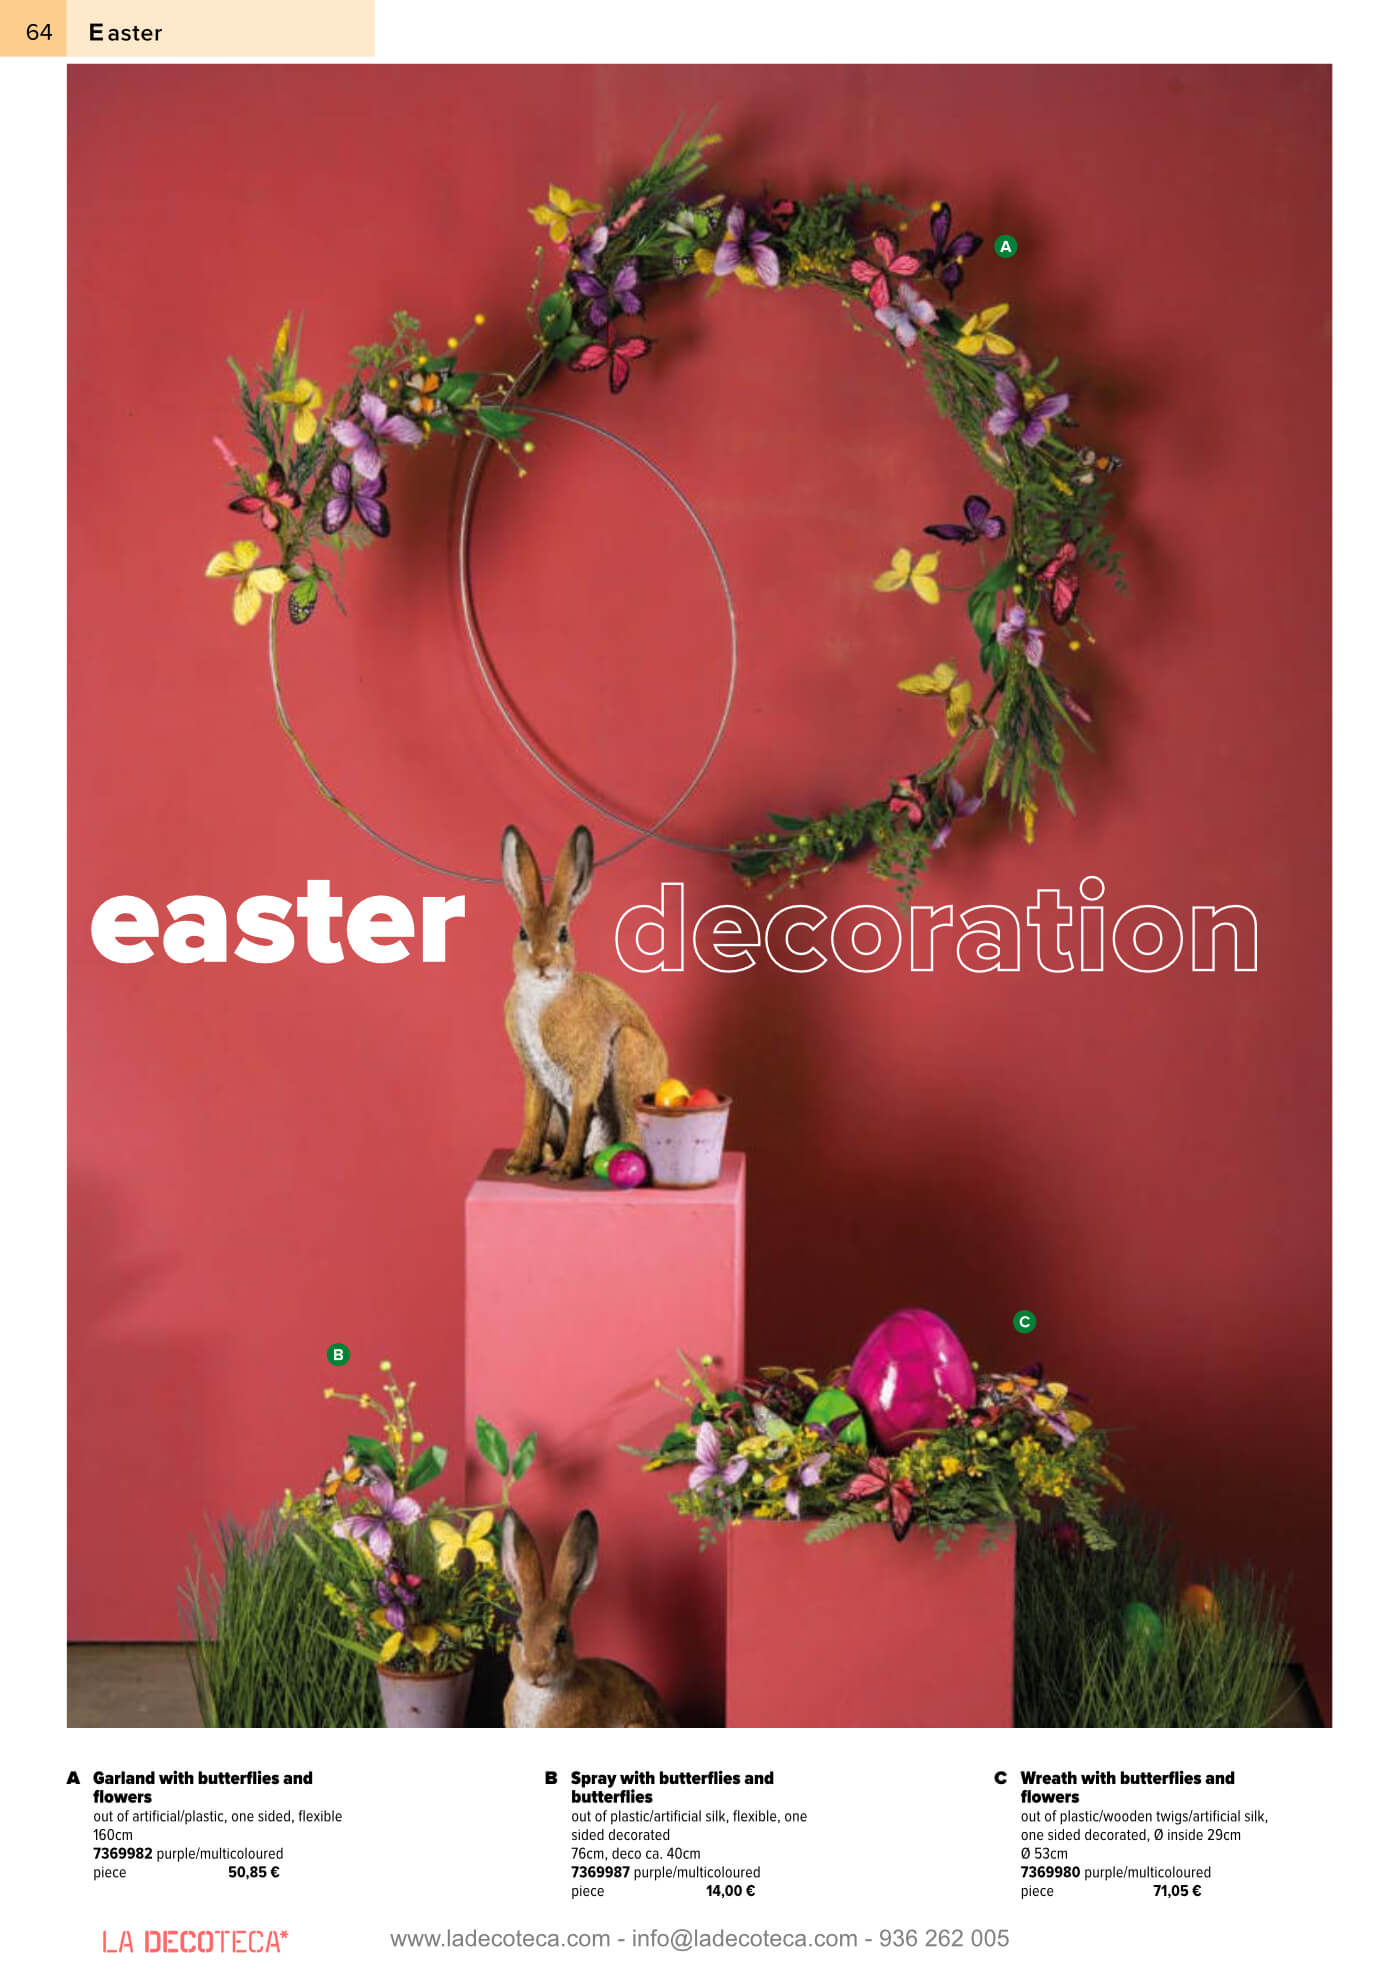 Idea de decoracion de escaparate para pasteleria con flores, huevos y conejos